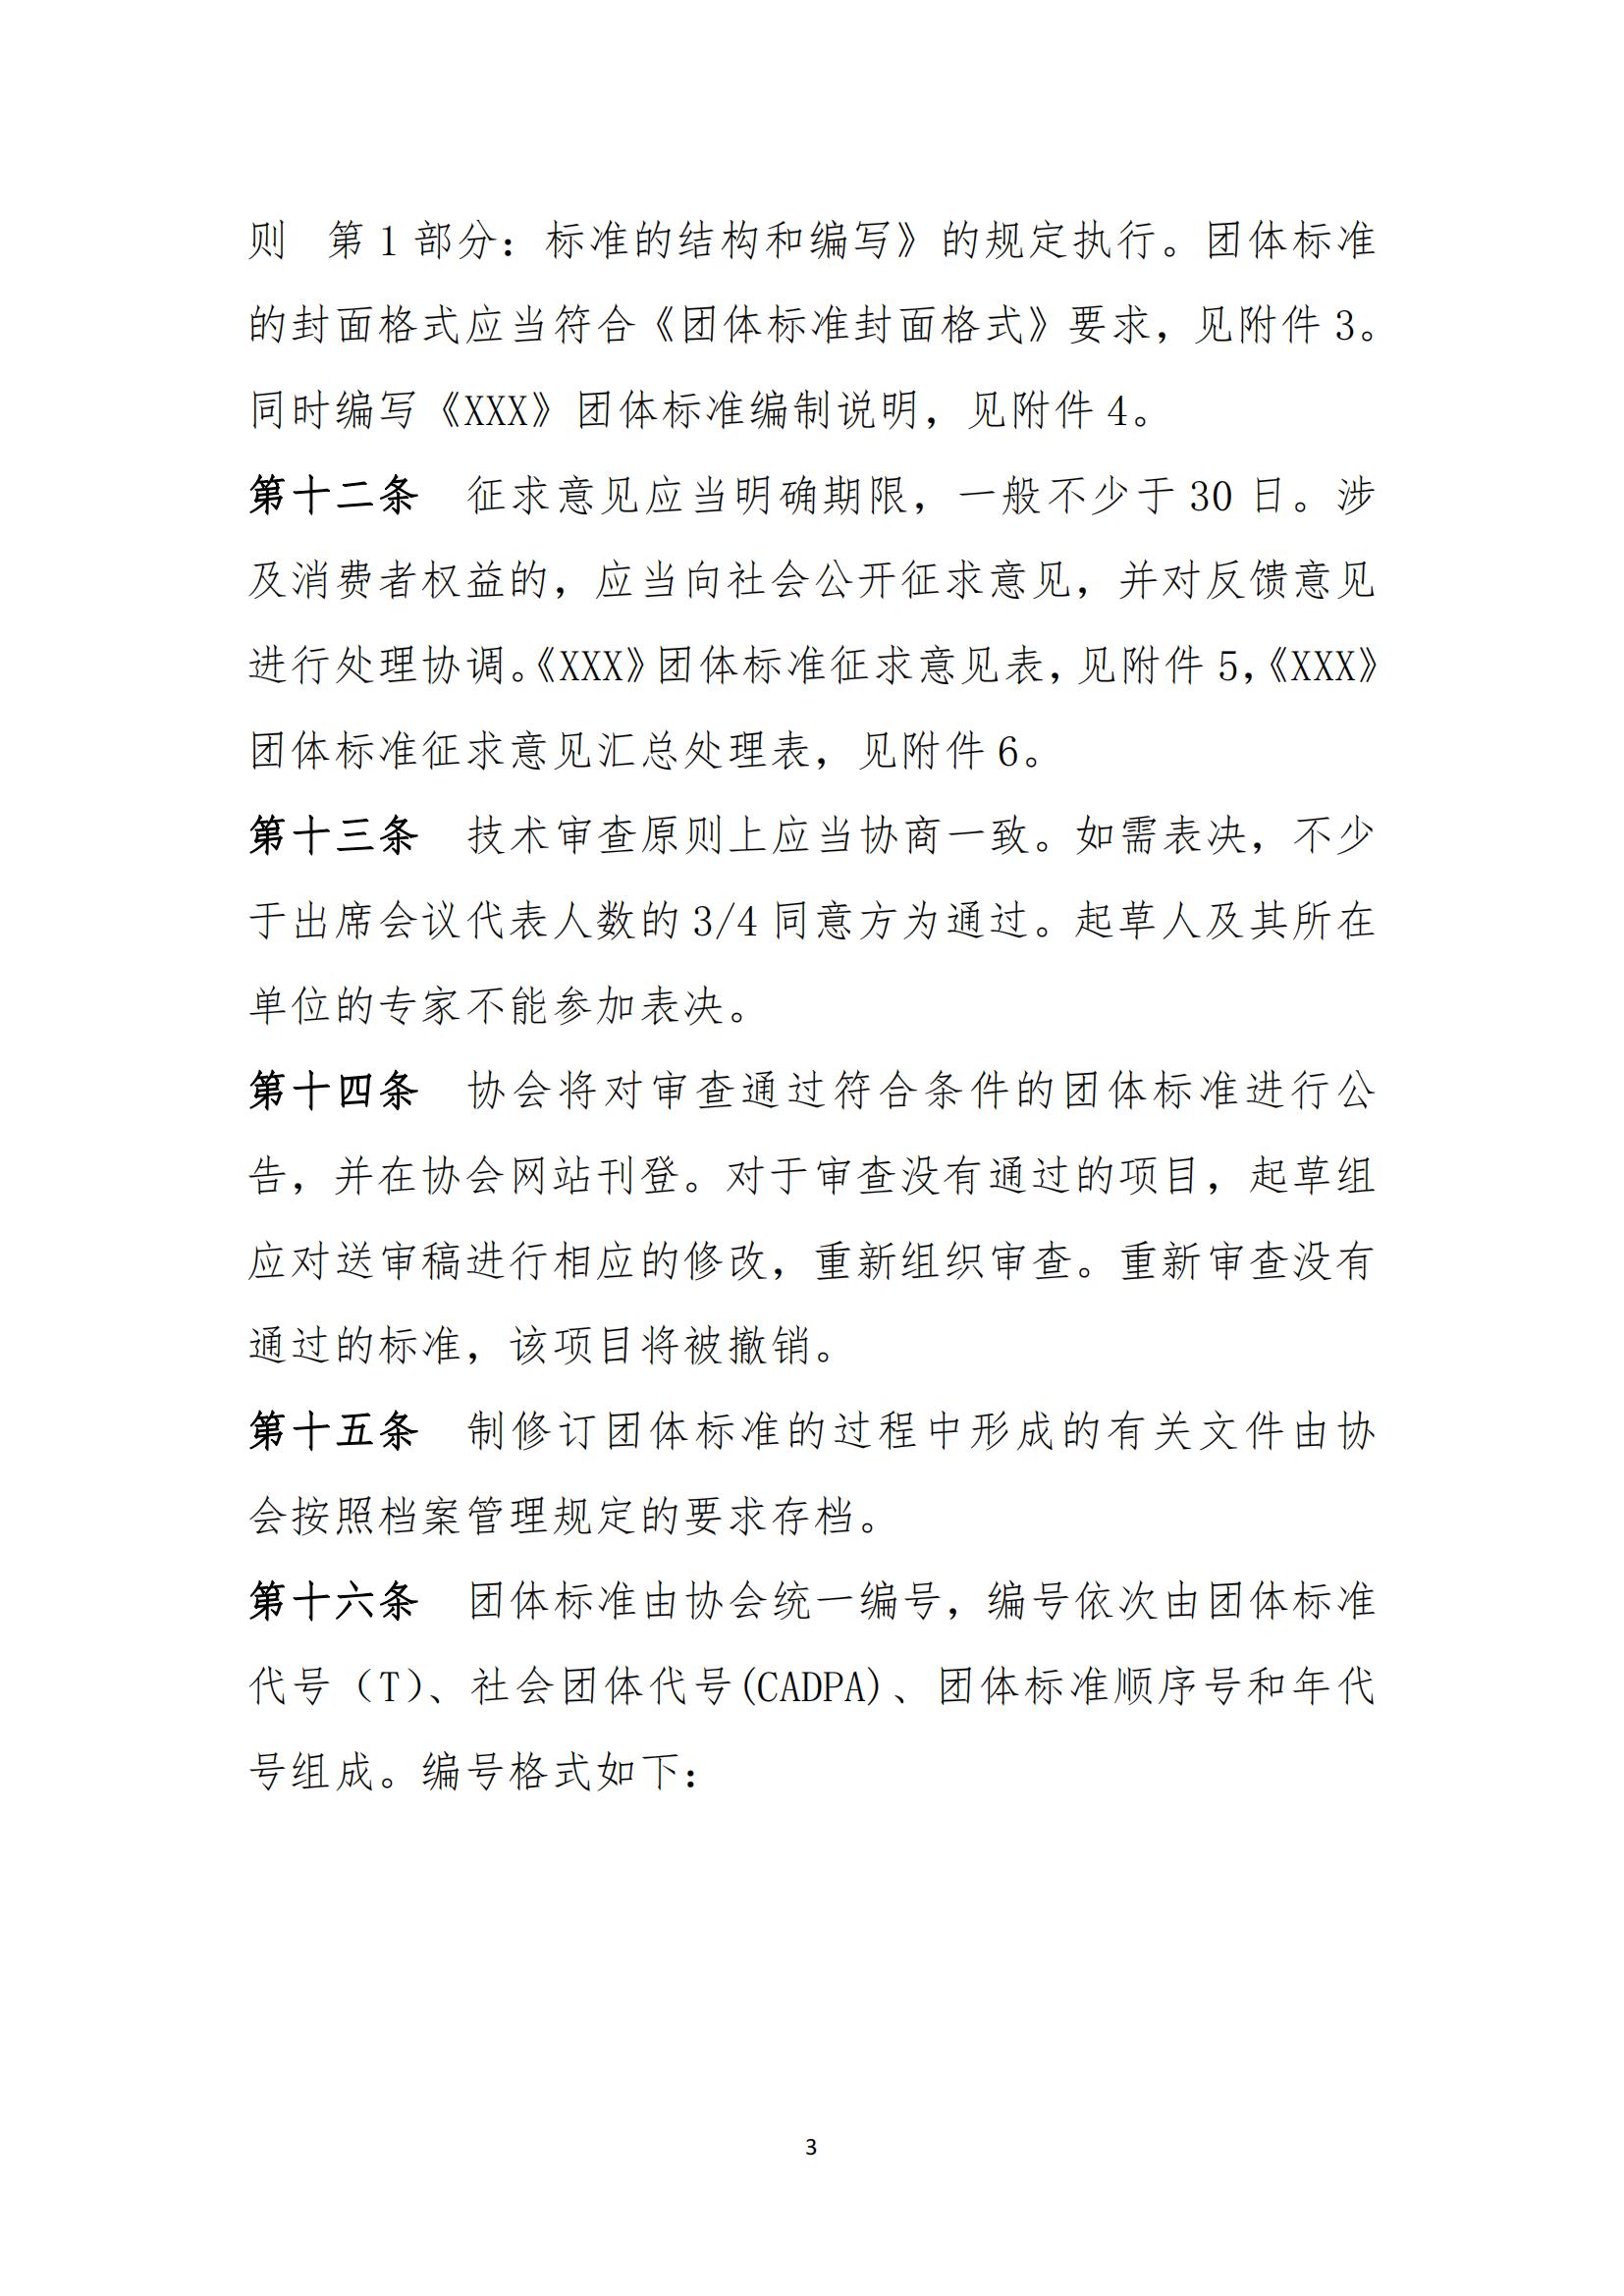 中国音像与数字出版协会团体标准管理规定(2)_02.jpg